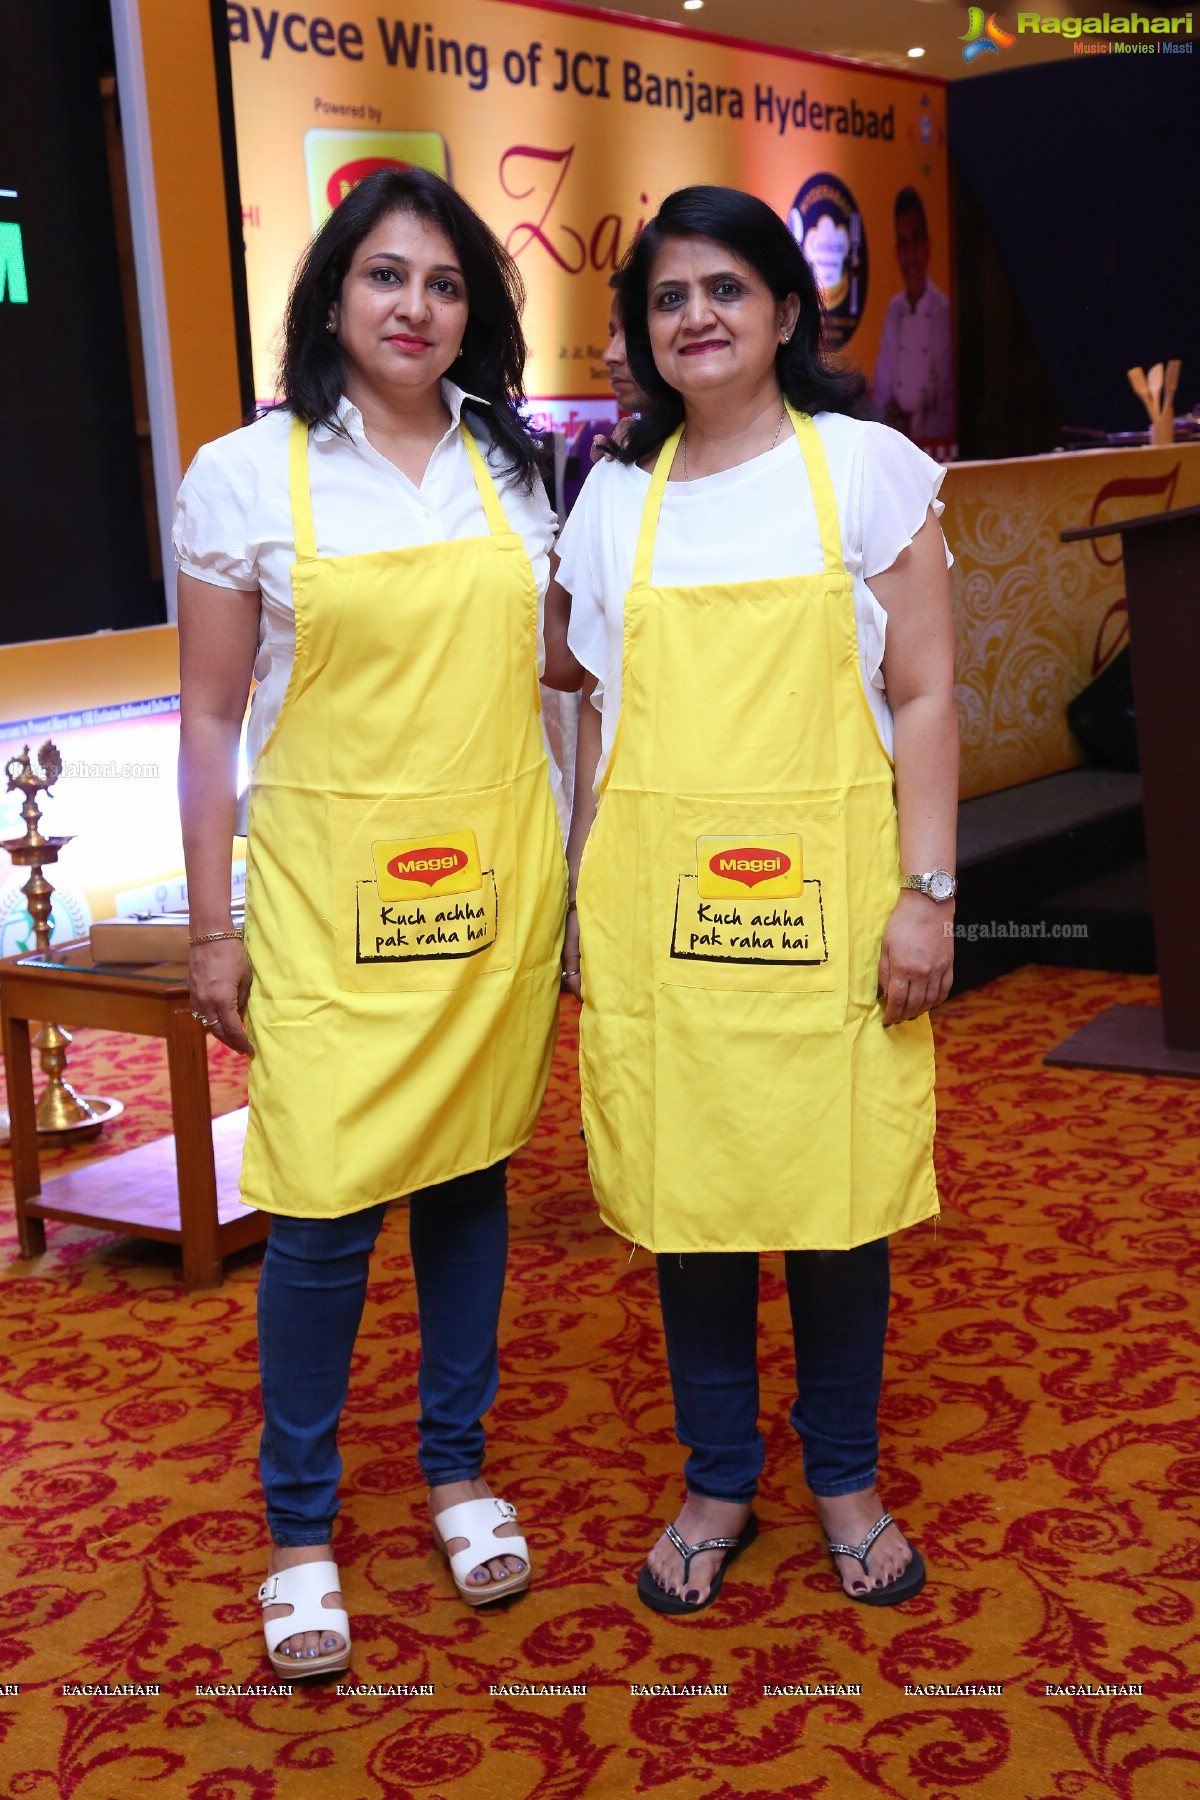 Zaiqa - Cookery Workshop by Junior Jaycee Wing of JCI Banjara Hyderabad at Hotel Taj Deccan